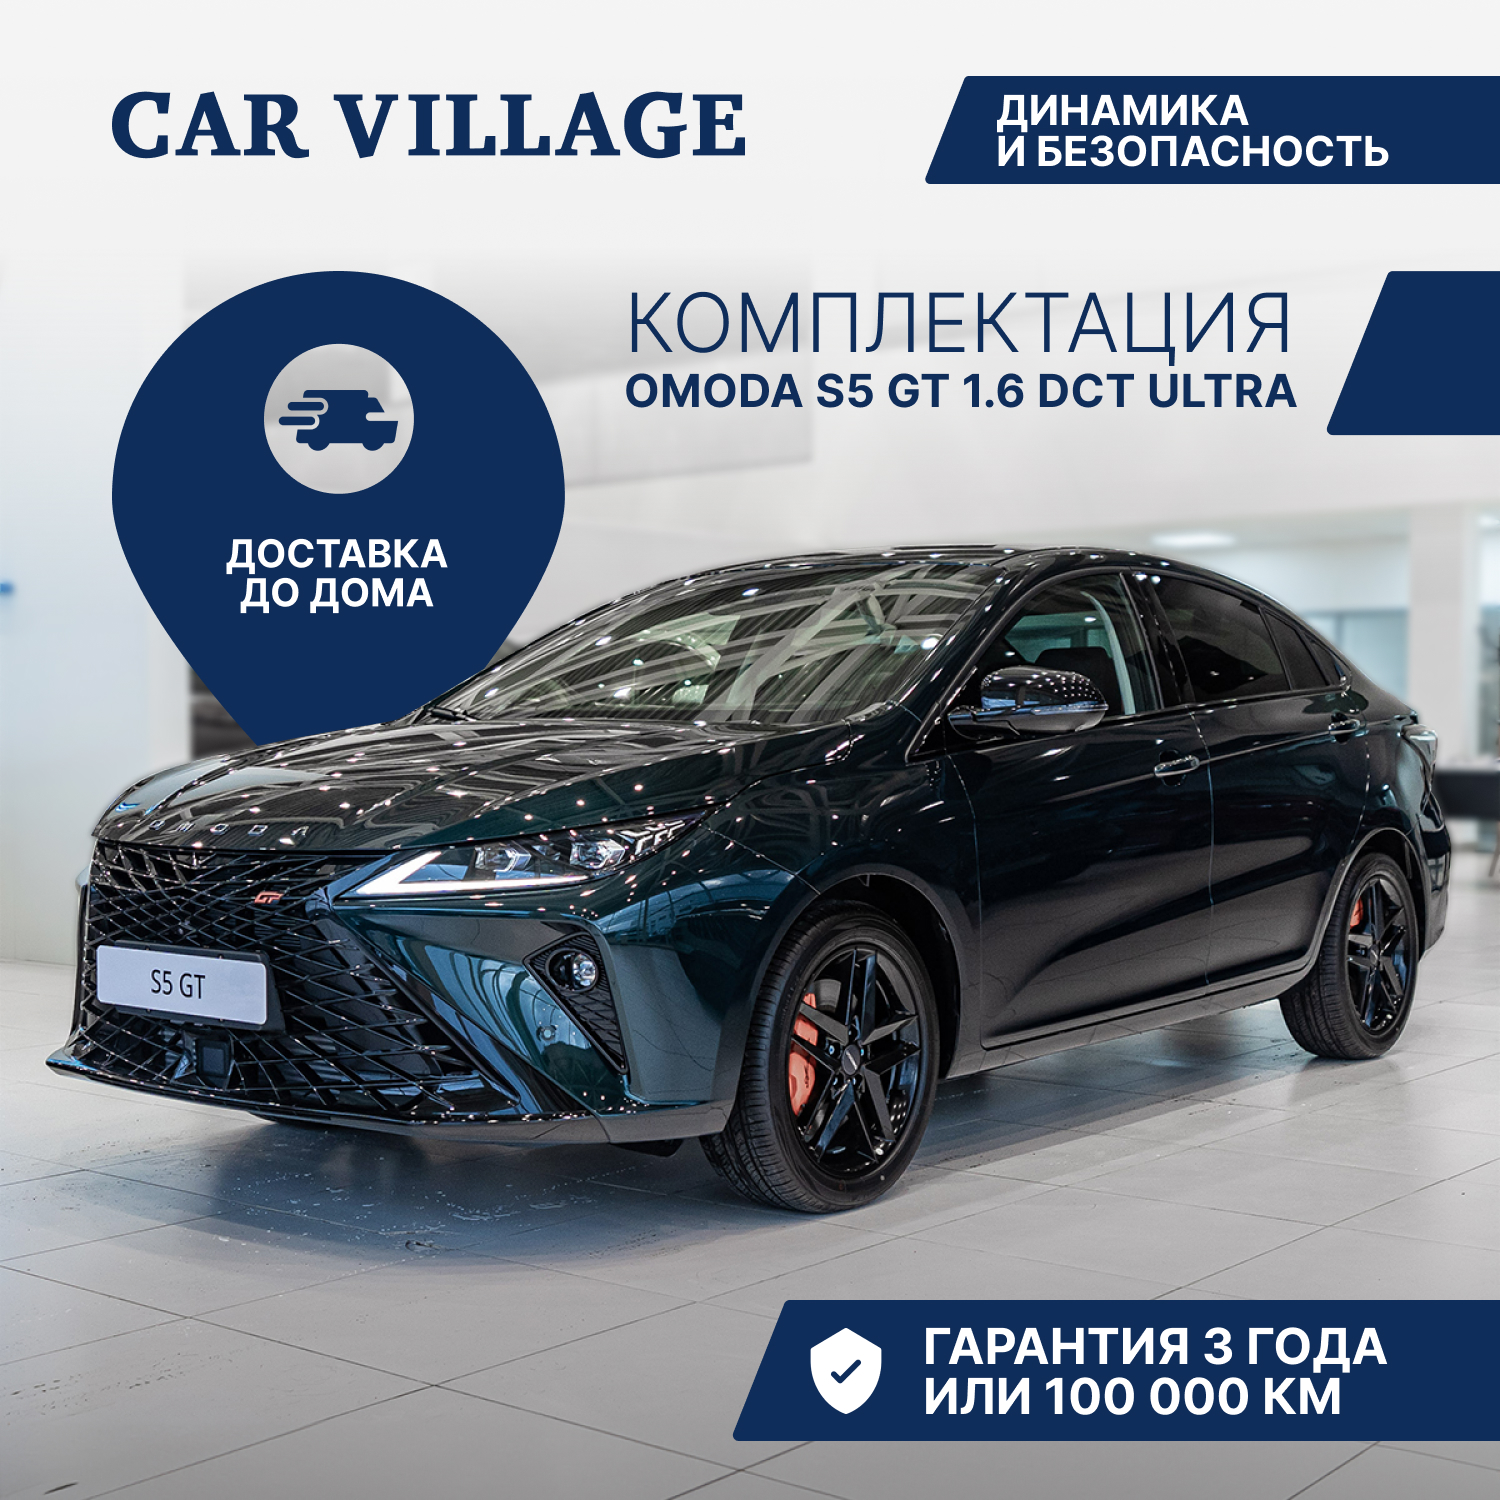 Автомобиль OMODA S5 GT 1.6 DCT Ultra зеленый - купить в Москве, цены на Мегамаркет | 600017315727